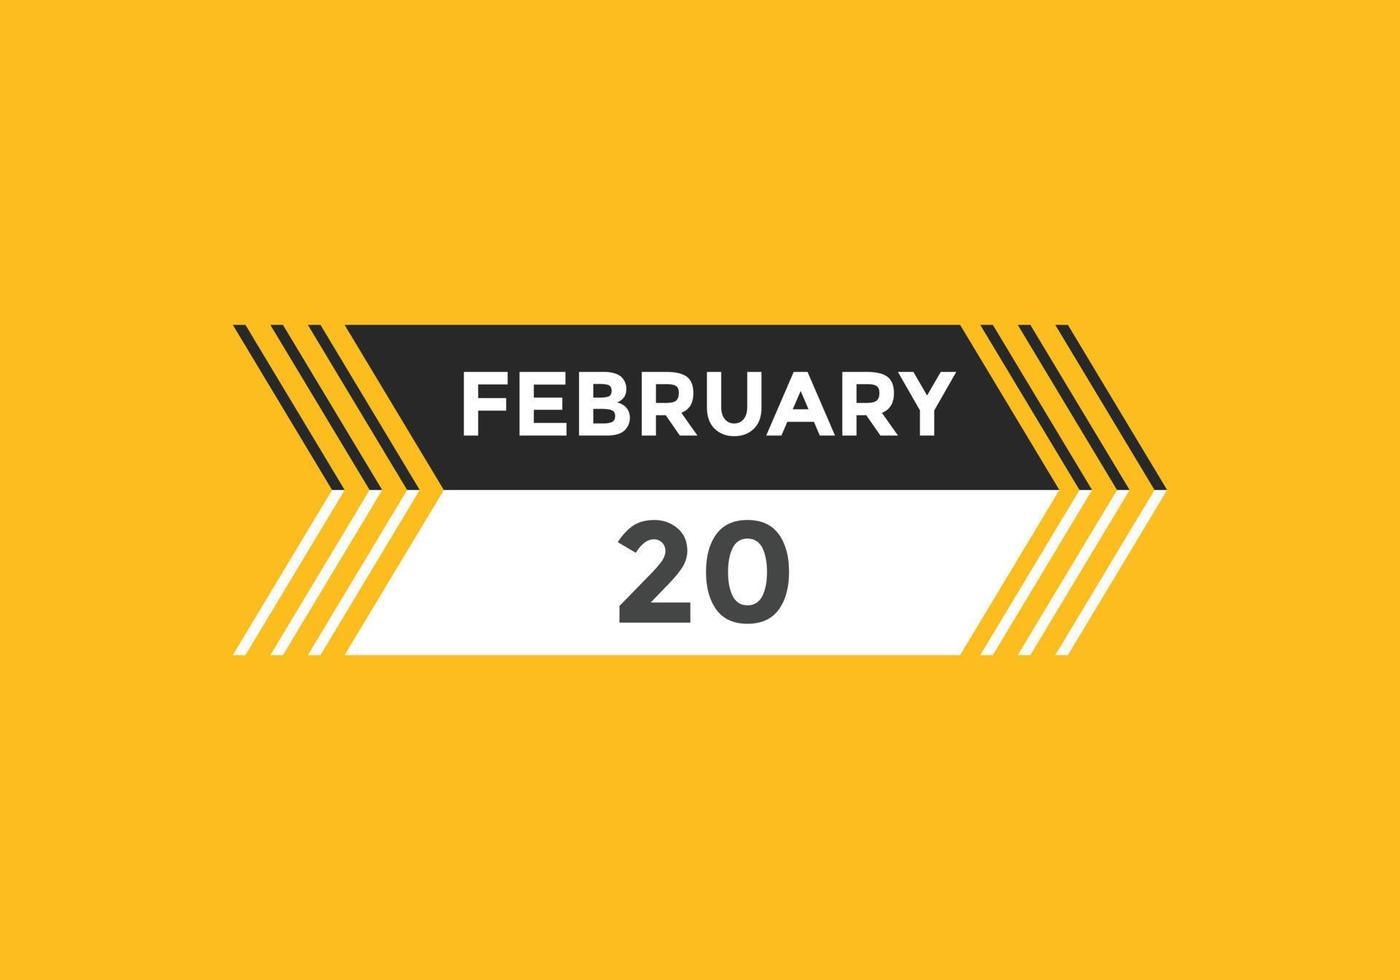 Recordatorio del calendario del 20 de febrero. Plantilla de icono de calendario diario del 20 de febrero. plantilla de diseño de icono de calendario 20 de febrero. ilustración vectorial vector